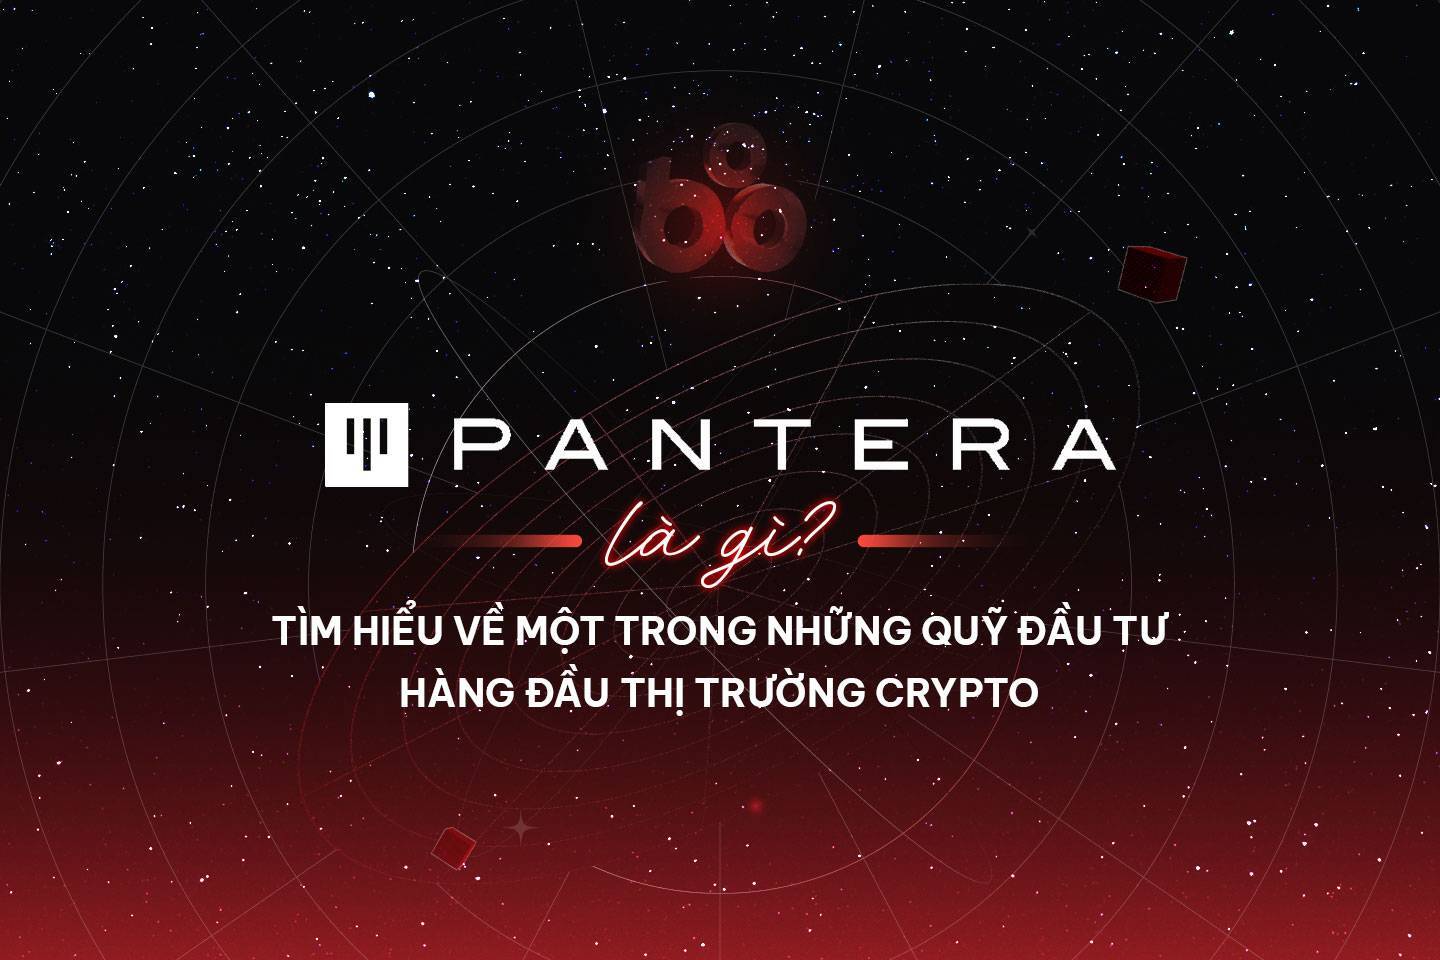 Pantera Capital Là Gì Tìm Hiểu Về Một Trong Những Quỹ Đầu Tư Hàng Đầu Thị Trường Crypto